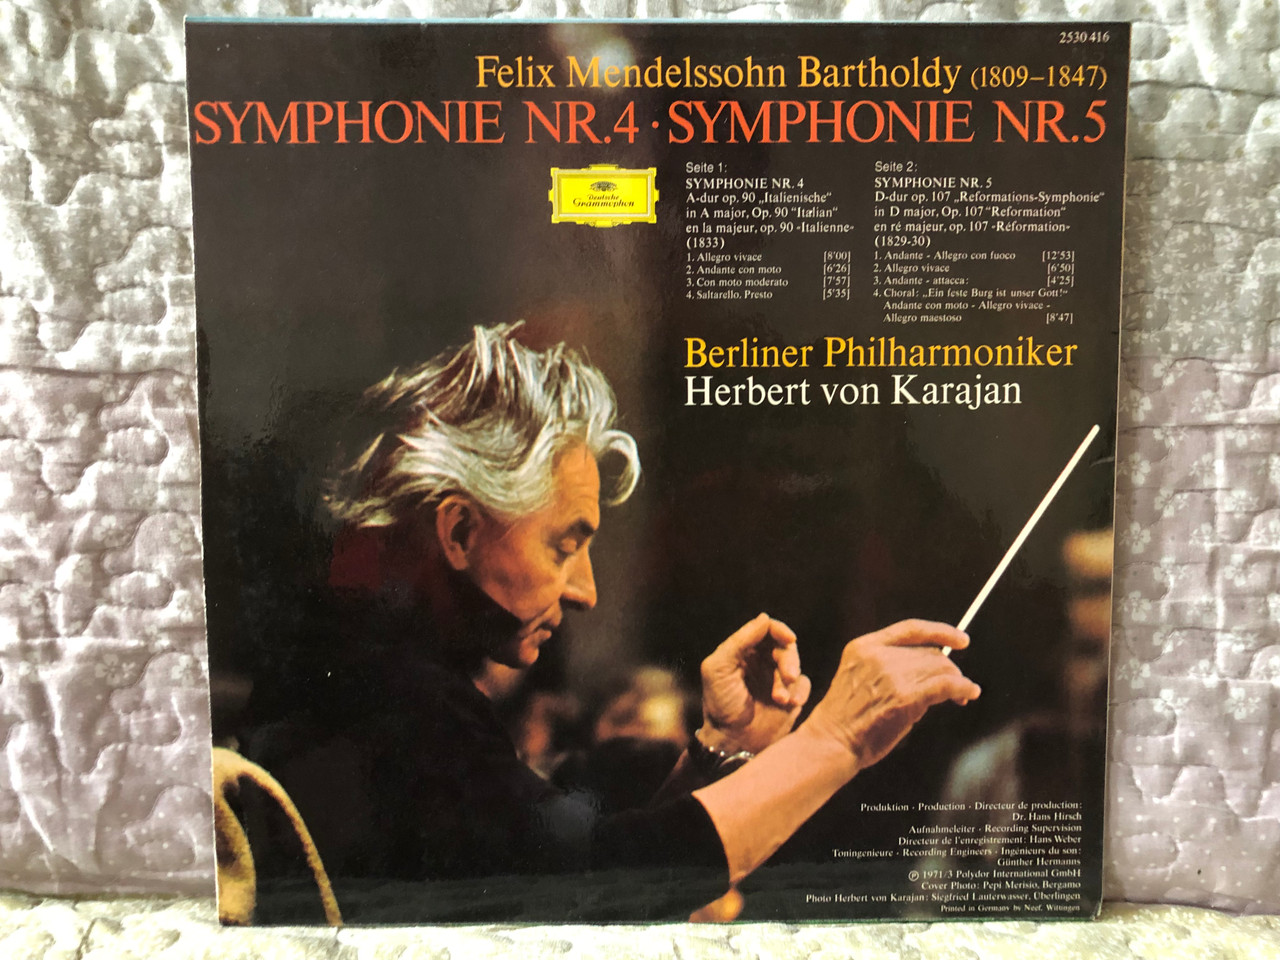 https://cdn10.bigcommerce.com/s-62bdpkt7pb/products/0/images/280228/Felix_Mendelssohn_Bartholdy_-_Symphonien_Nr._4_Italienische_Italian_Nr._5_Reformation_-_Berliner_Philharmoniker_Herbert_von_Karajan_Deutsche_Grammophon_LP_Stereo_1973_2530_416_1__30746.1688105169.1280.1280.JPG?c=2&_gl=1*upb93b*_ga*MjA2NTIxMjE2MC4xNTkwNTEyNTMy*_ga_WS2VZYPC6G*MTY4ODEwMjE4Ny45NzAuMS4xNjg4MTA1MDI2LjU4LjAuMA..